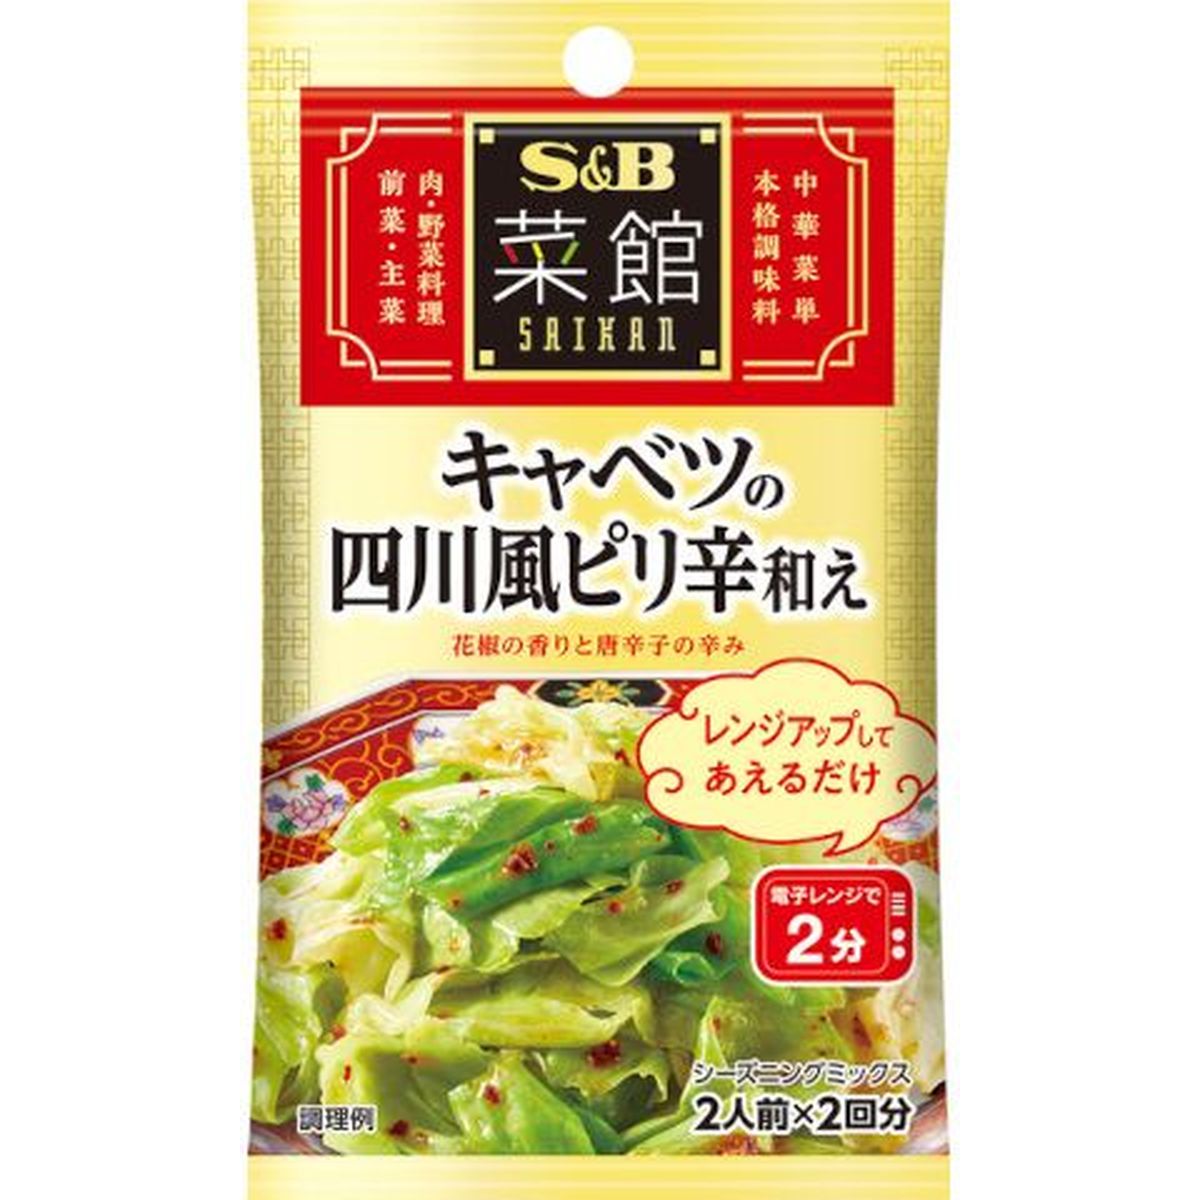 【10個入リ】S＆B 菜館シーズニング キャベツノ四川風ピリ辛和エ 3.5g